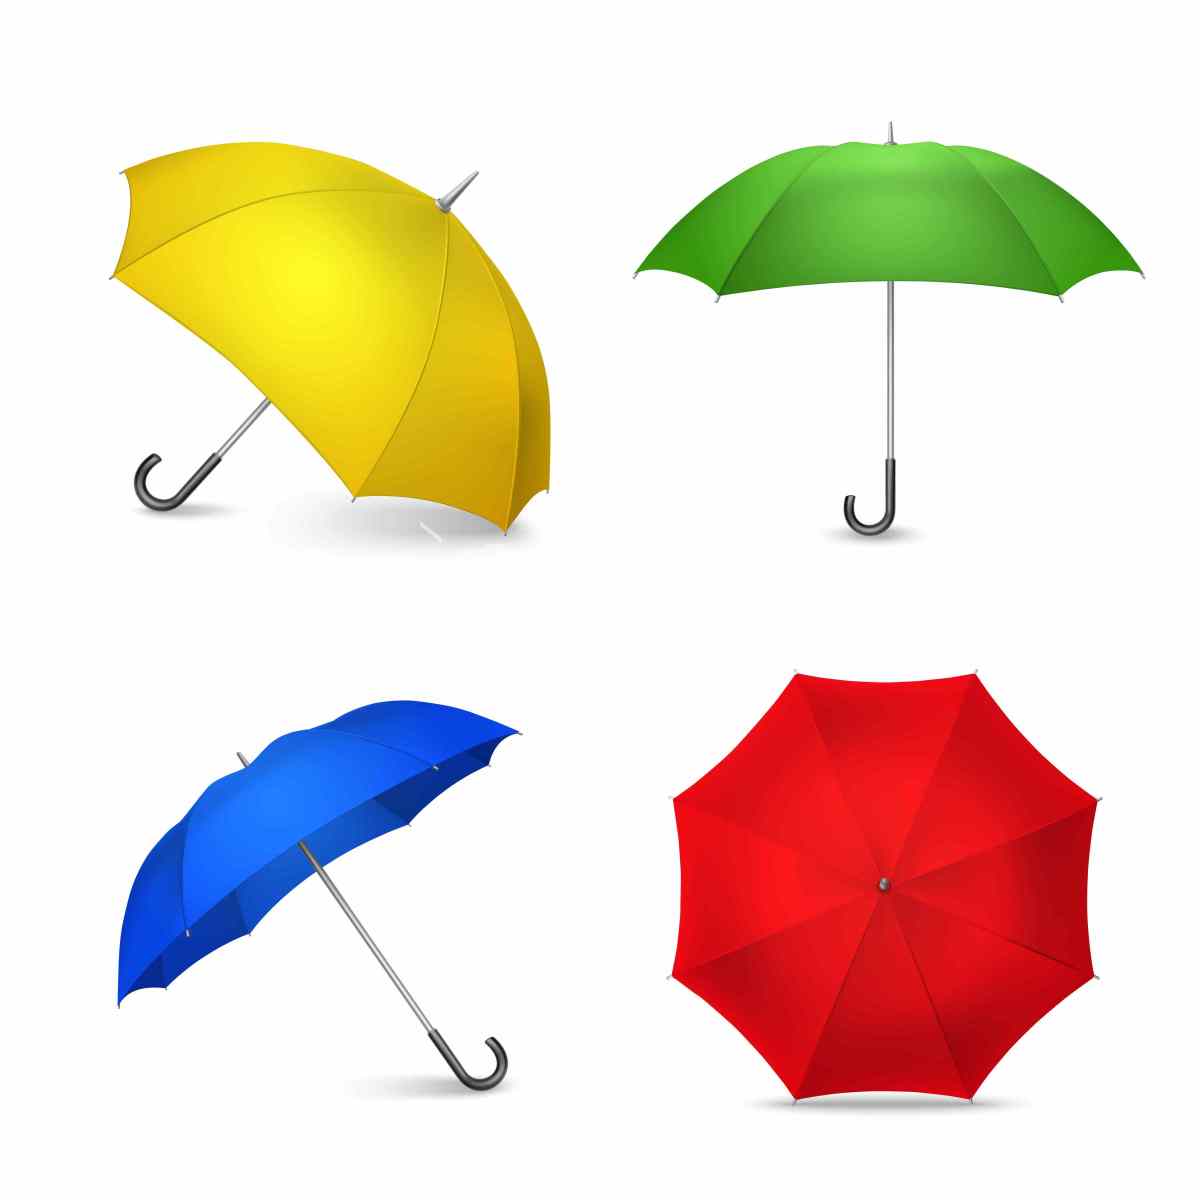 多彩雨伞集